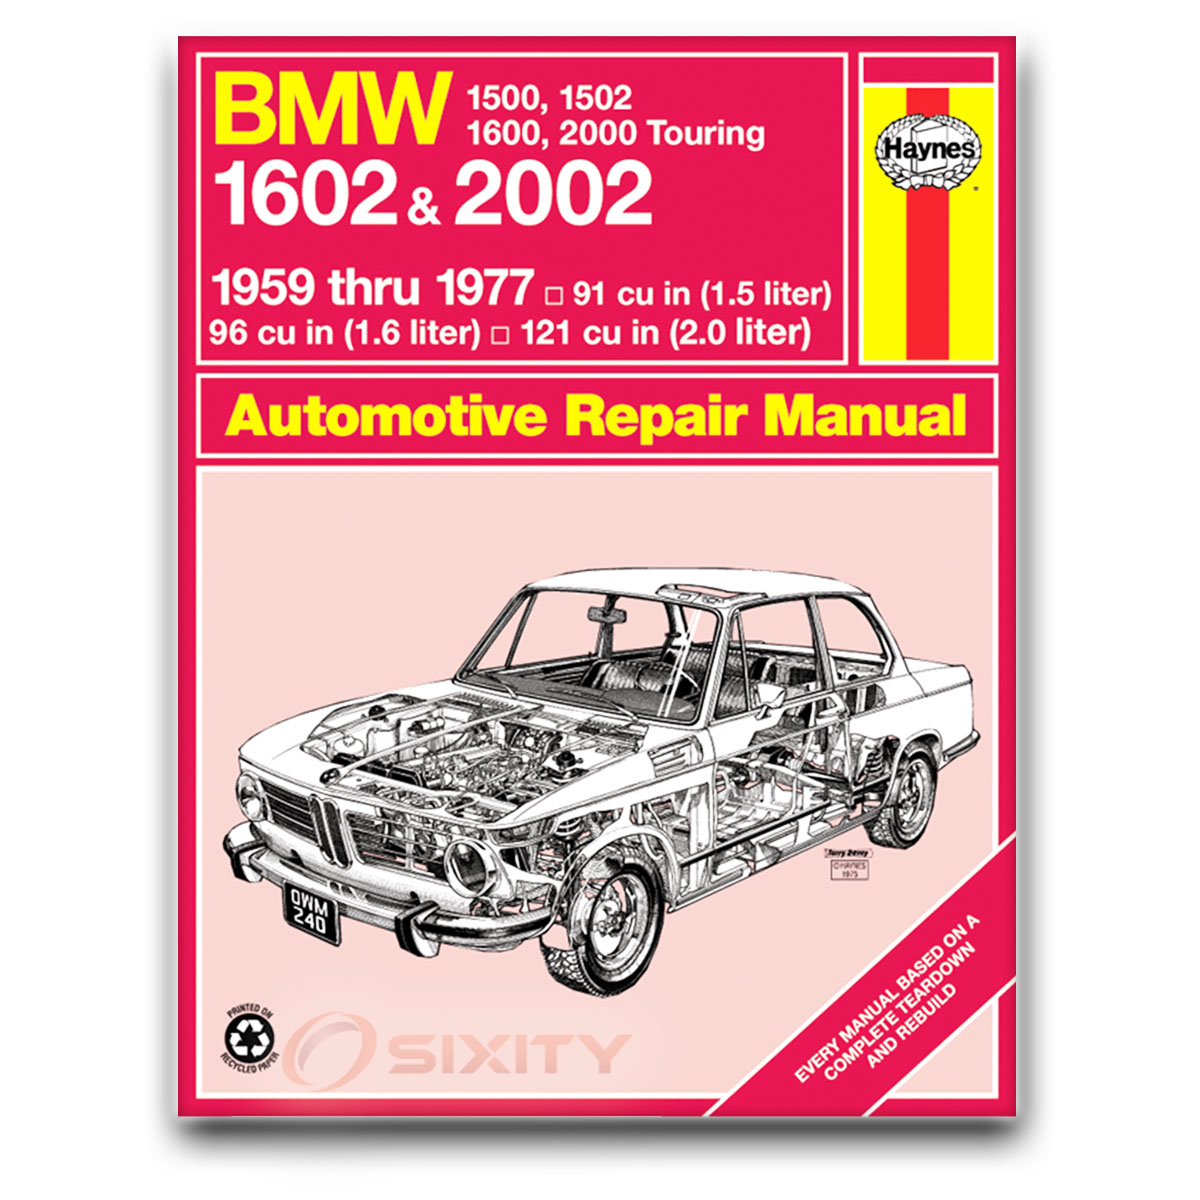 Bmw repair manual download free